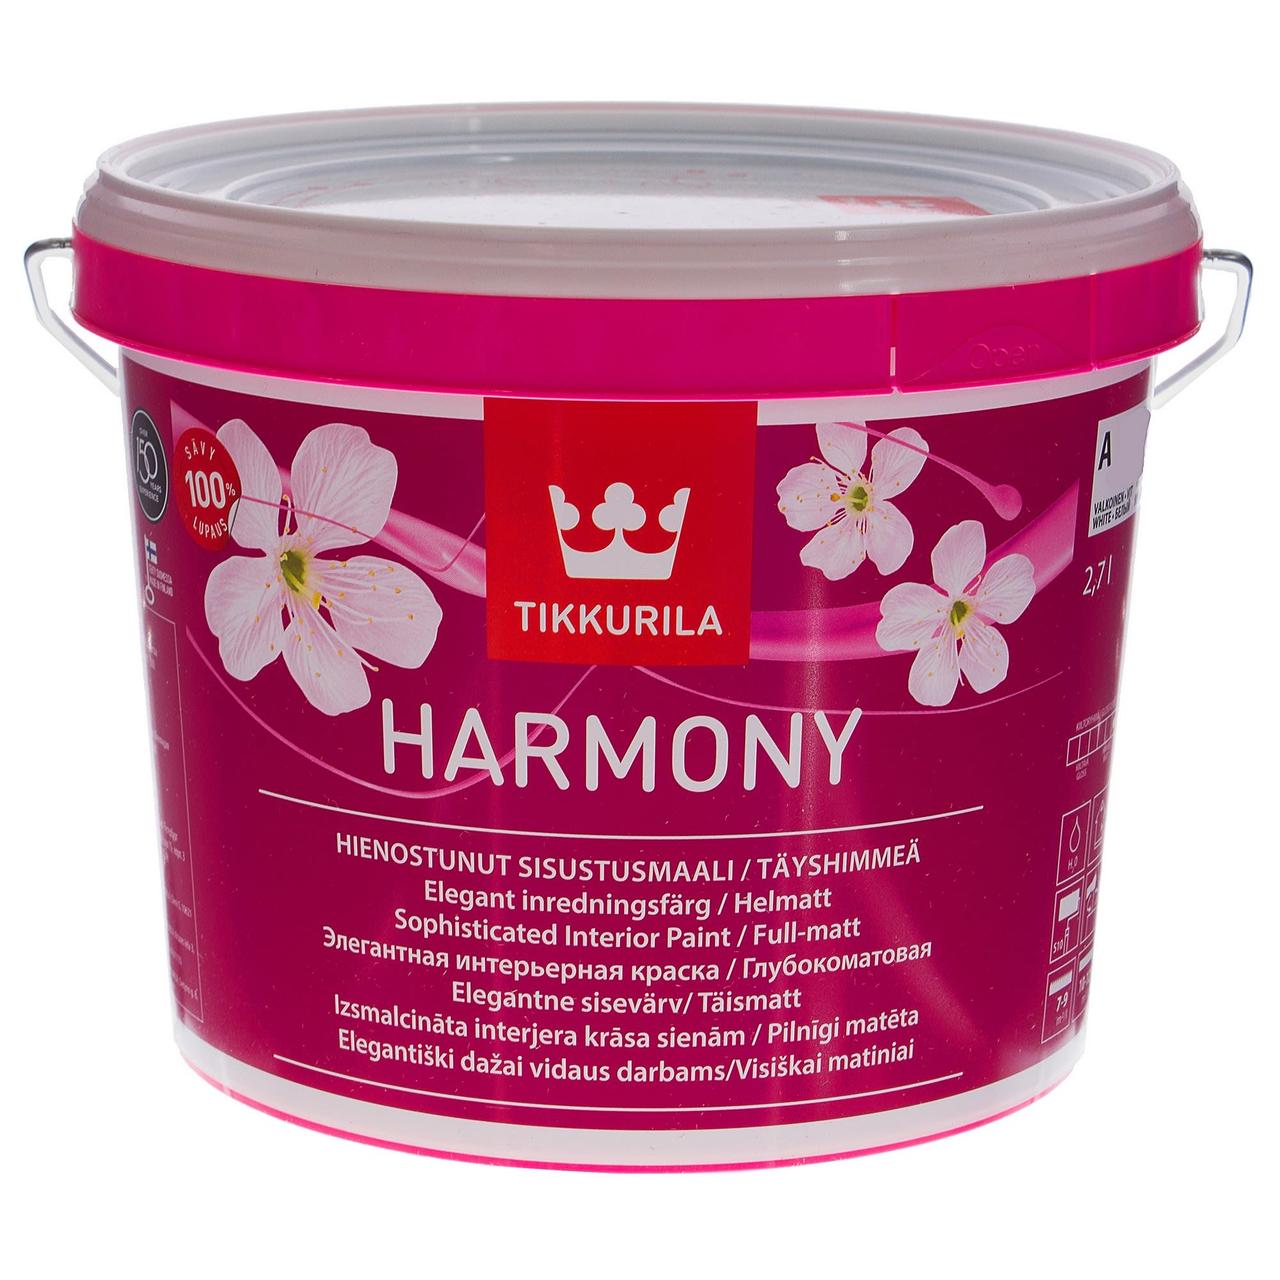 Tikkurila Harmony -  создает мягкую, бархатистую поверхность, к которой так и хочется прикоснуться